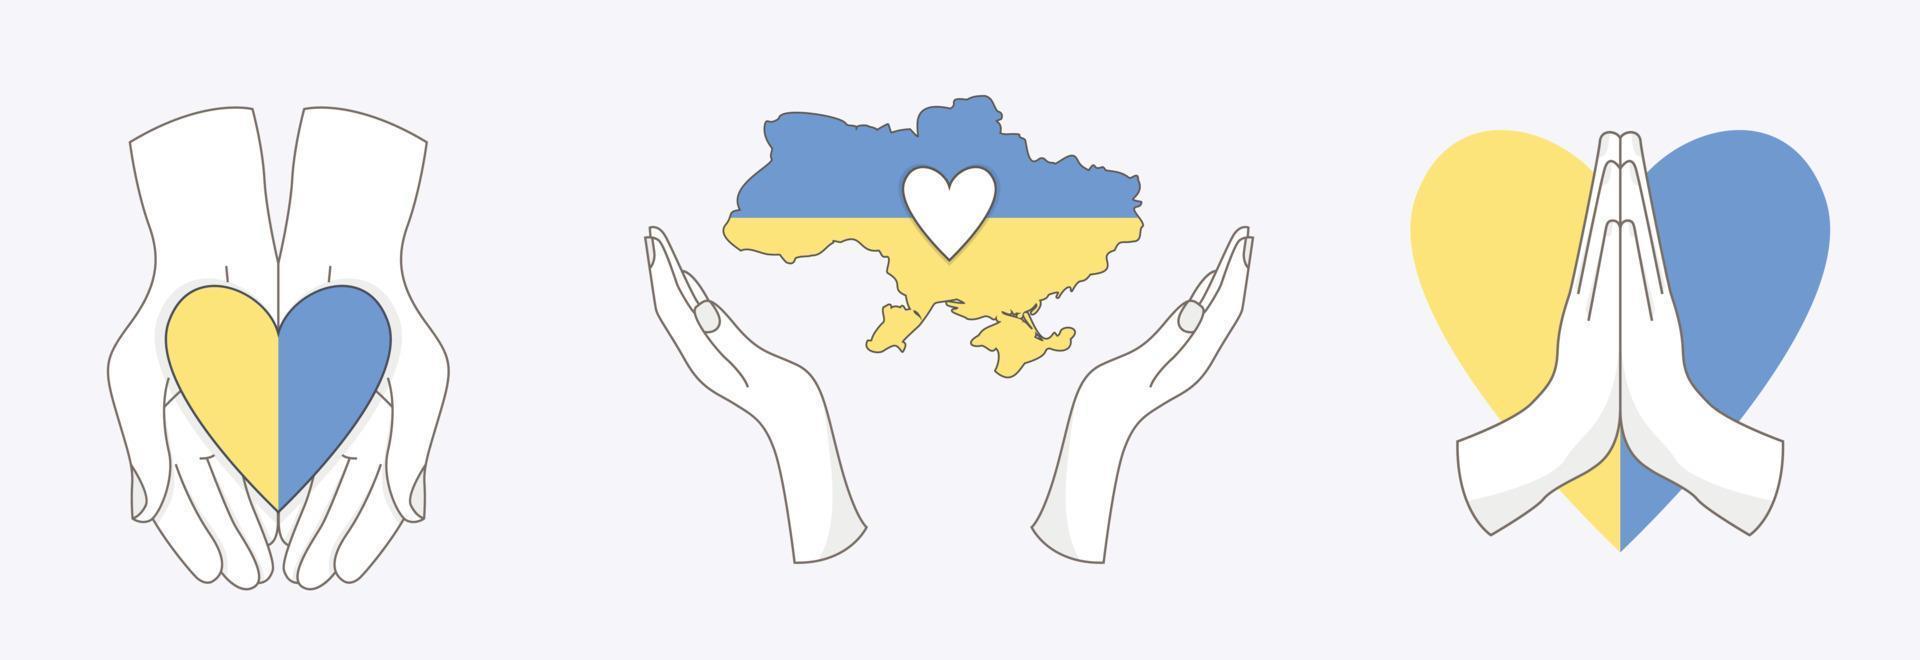 satz ukrainischer elemente mit verschiedenen händen. Herzflagge und Karte der Ukraine. ukraine-konzept retten. flache Ikonen des Vektors lokalisiert auf weißem Hintergrund vektor